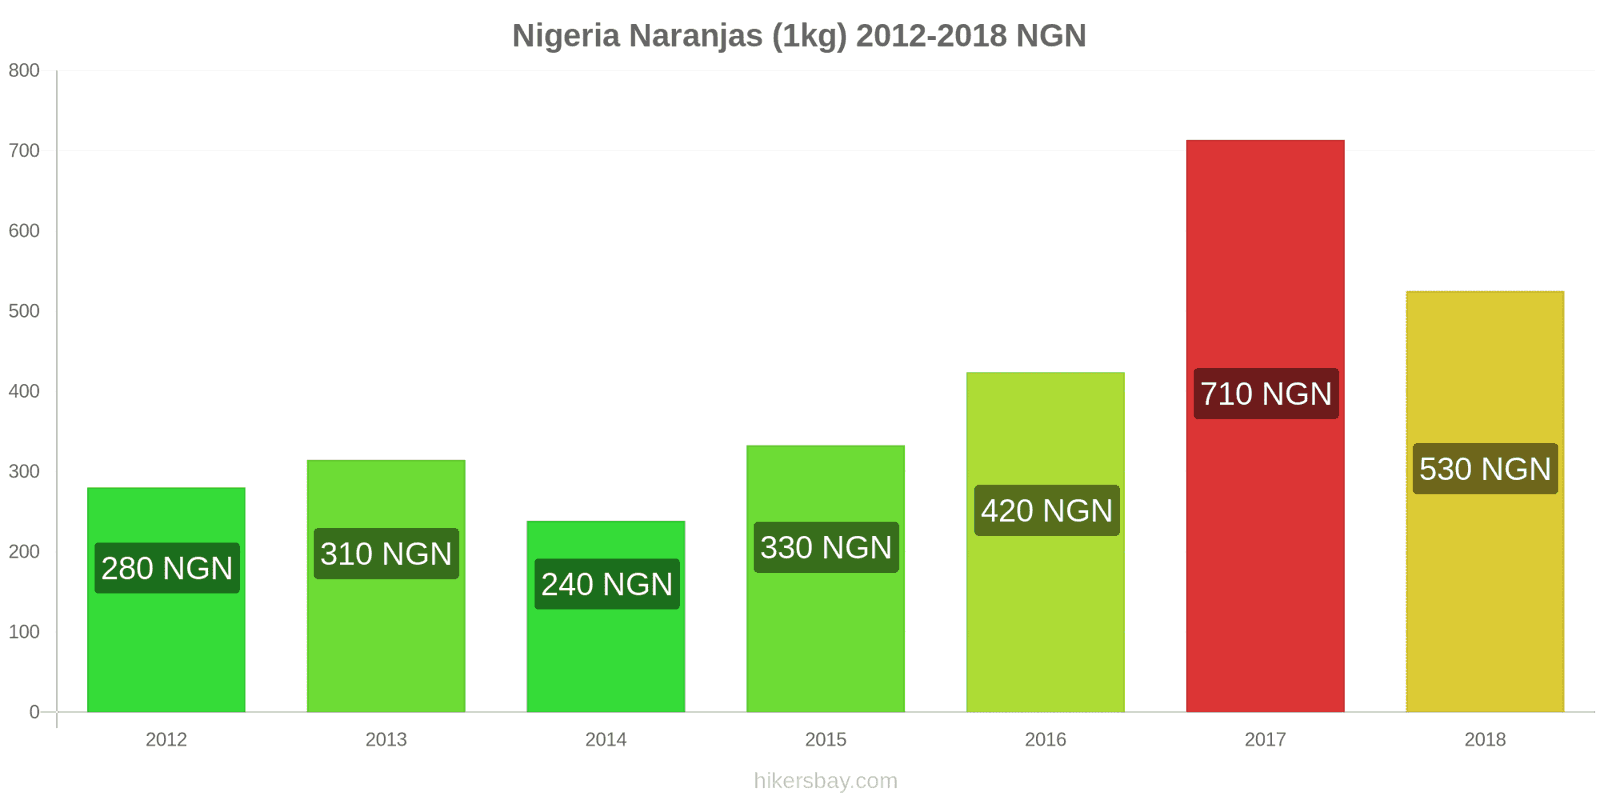 Nigeria cambios de precios Naranjas (1kg) hikersbay.com